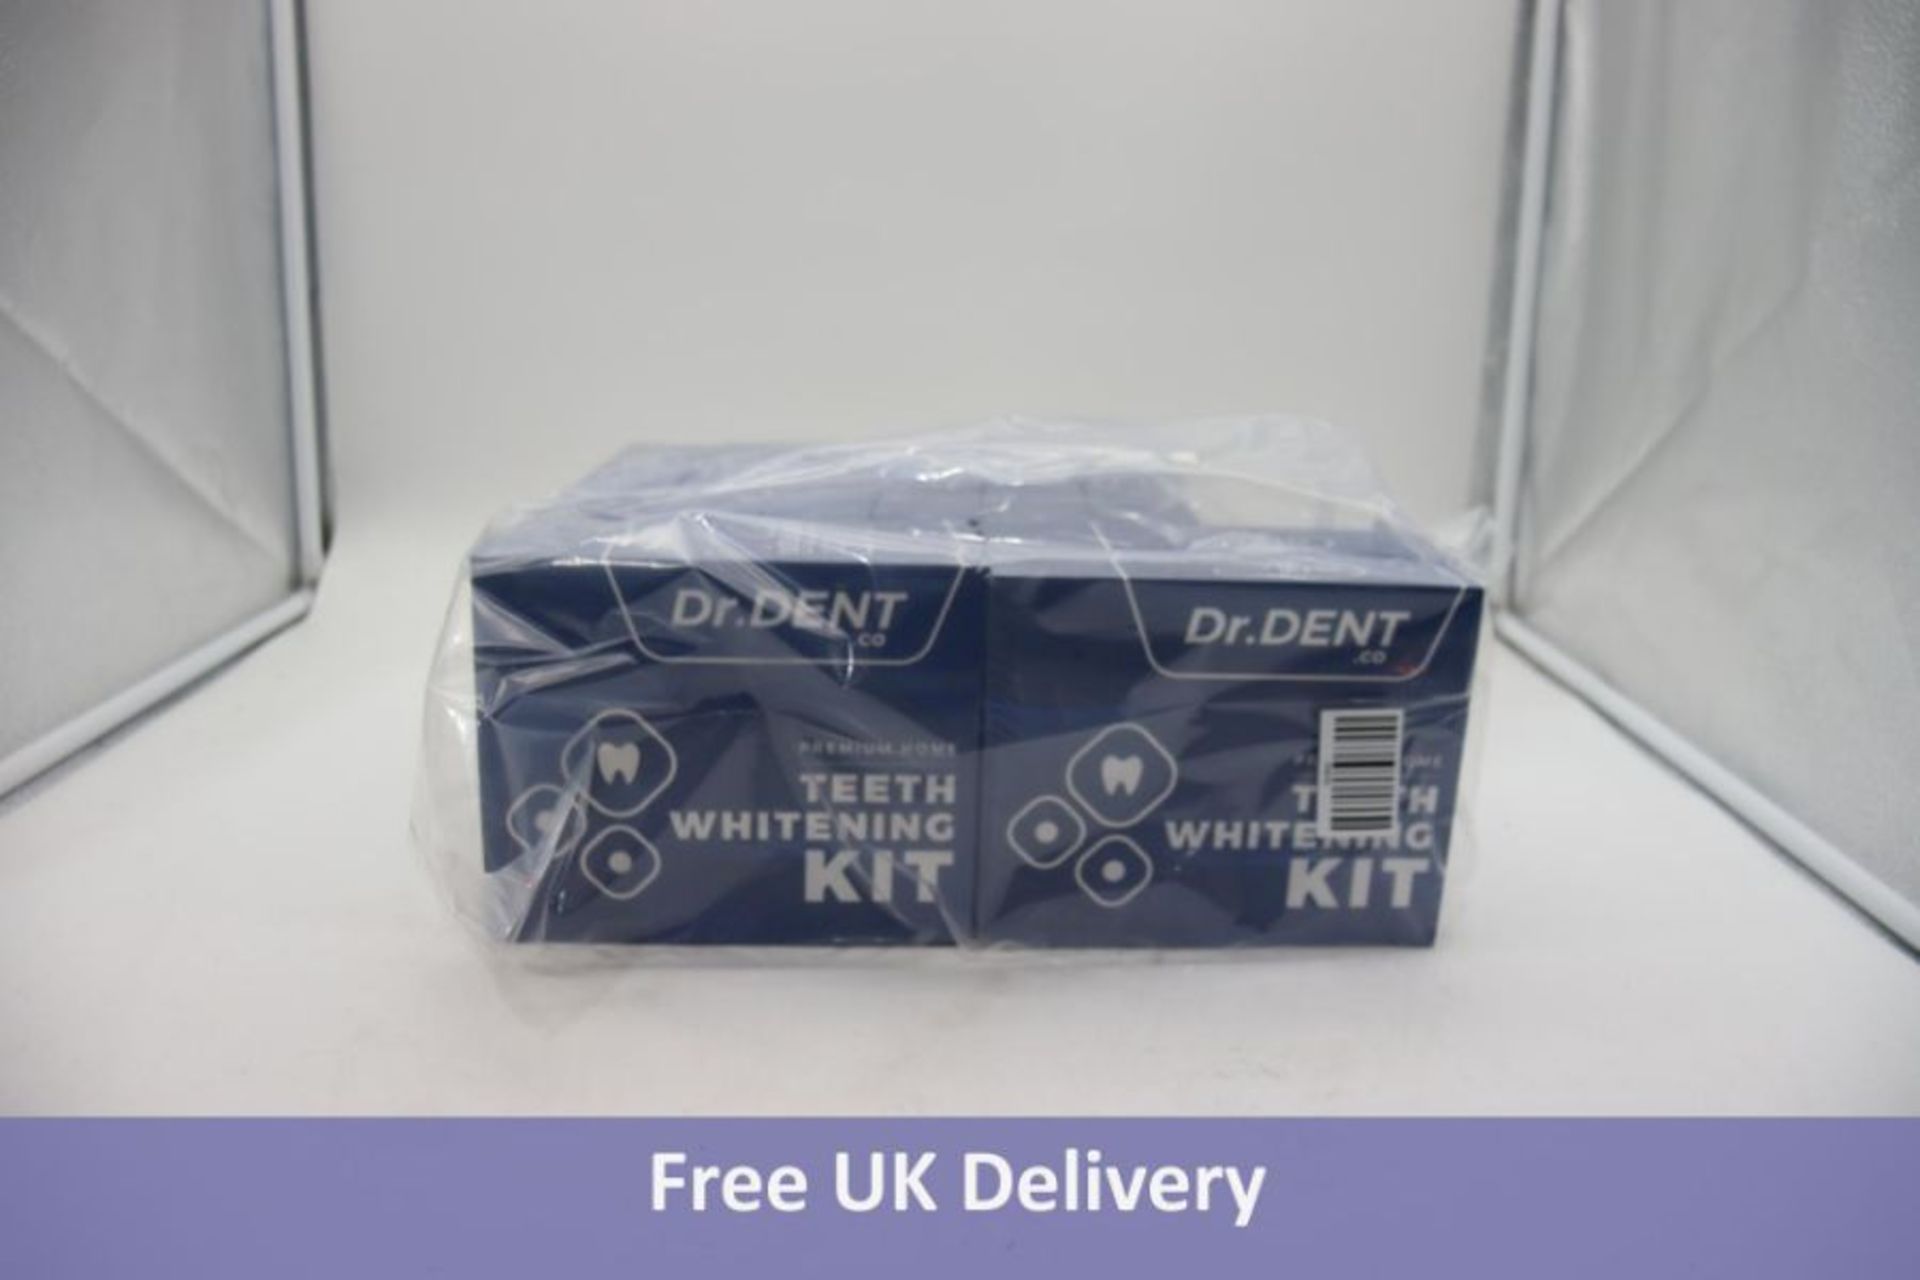 Ten Packs of Dr Dent Premium Home Teeth Whitening Kit